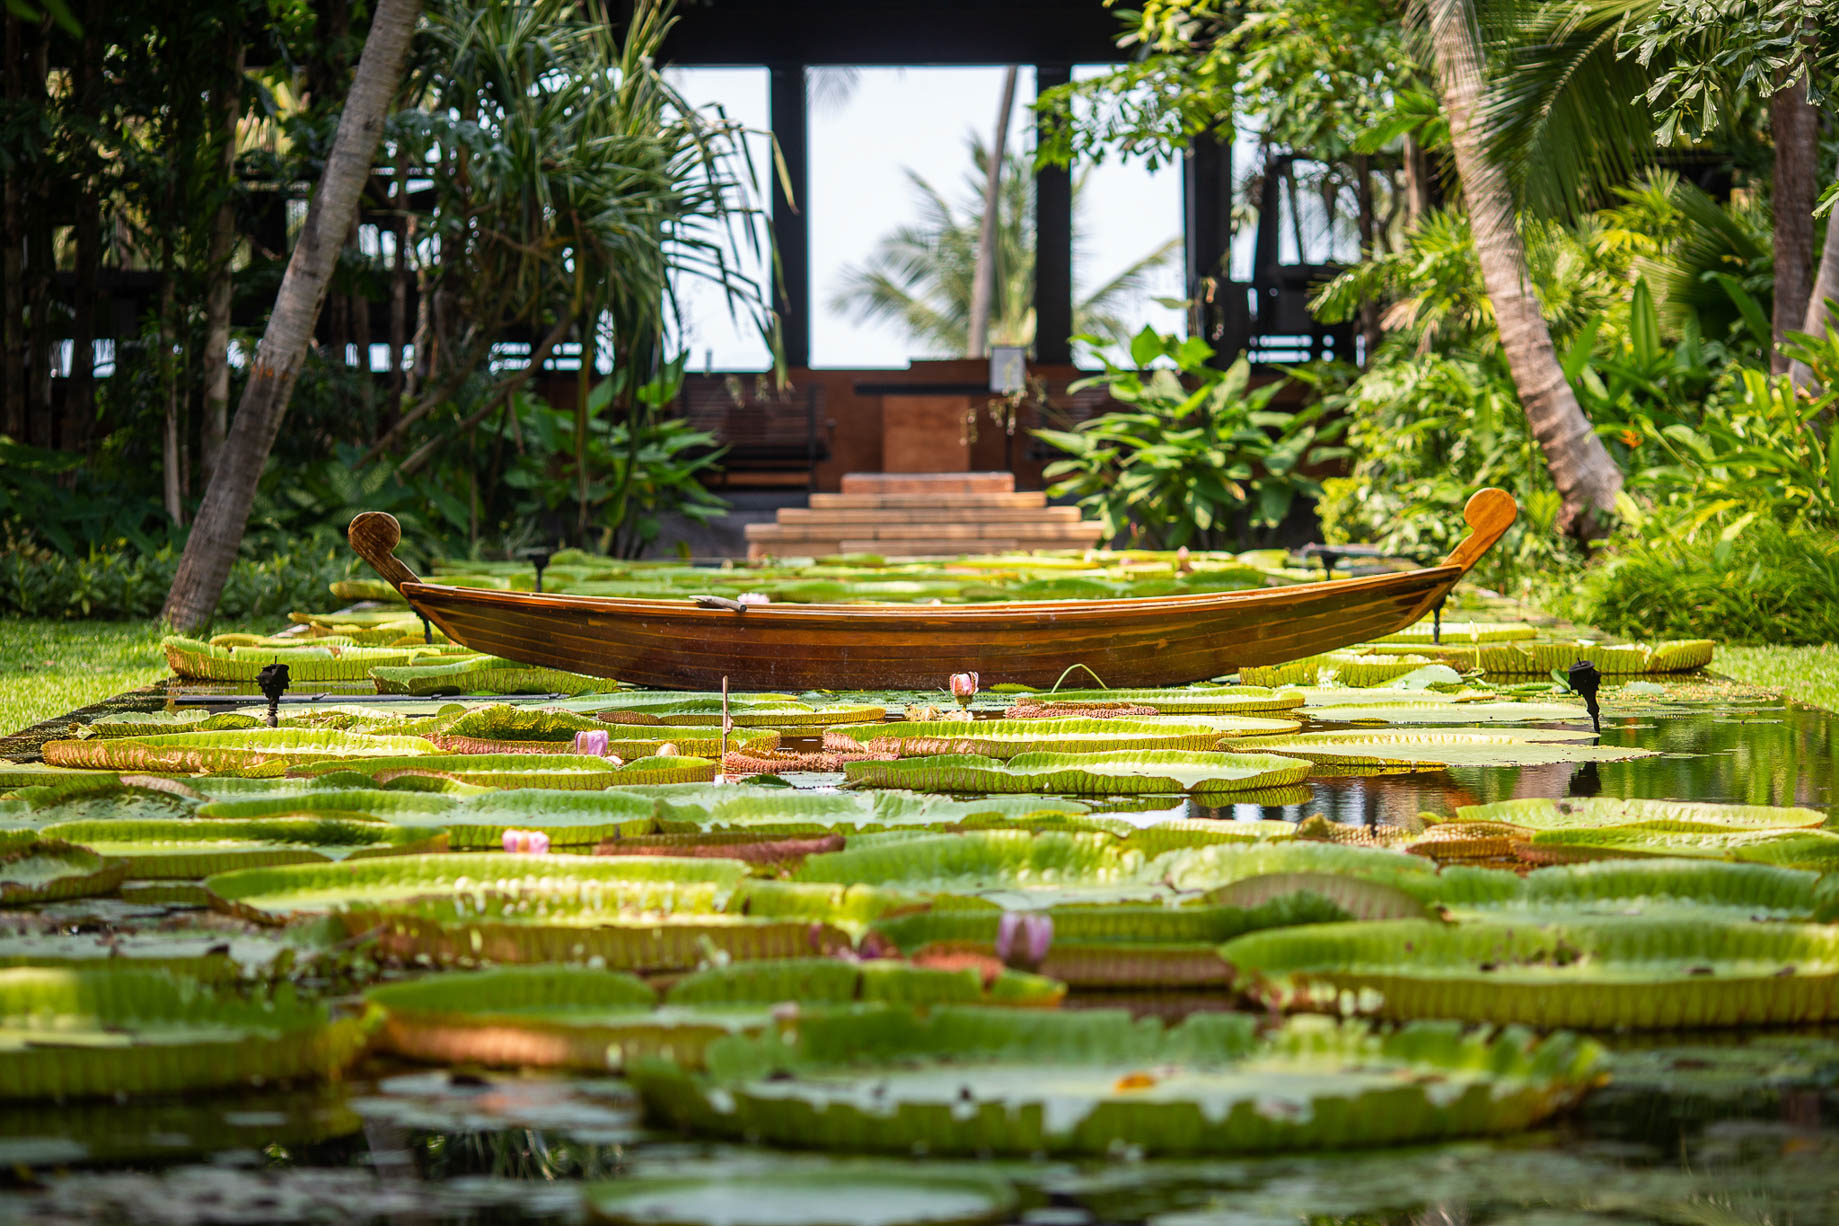 Anantara Bophut Koh Samui Resort – Thailand – Lotus Pond